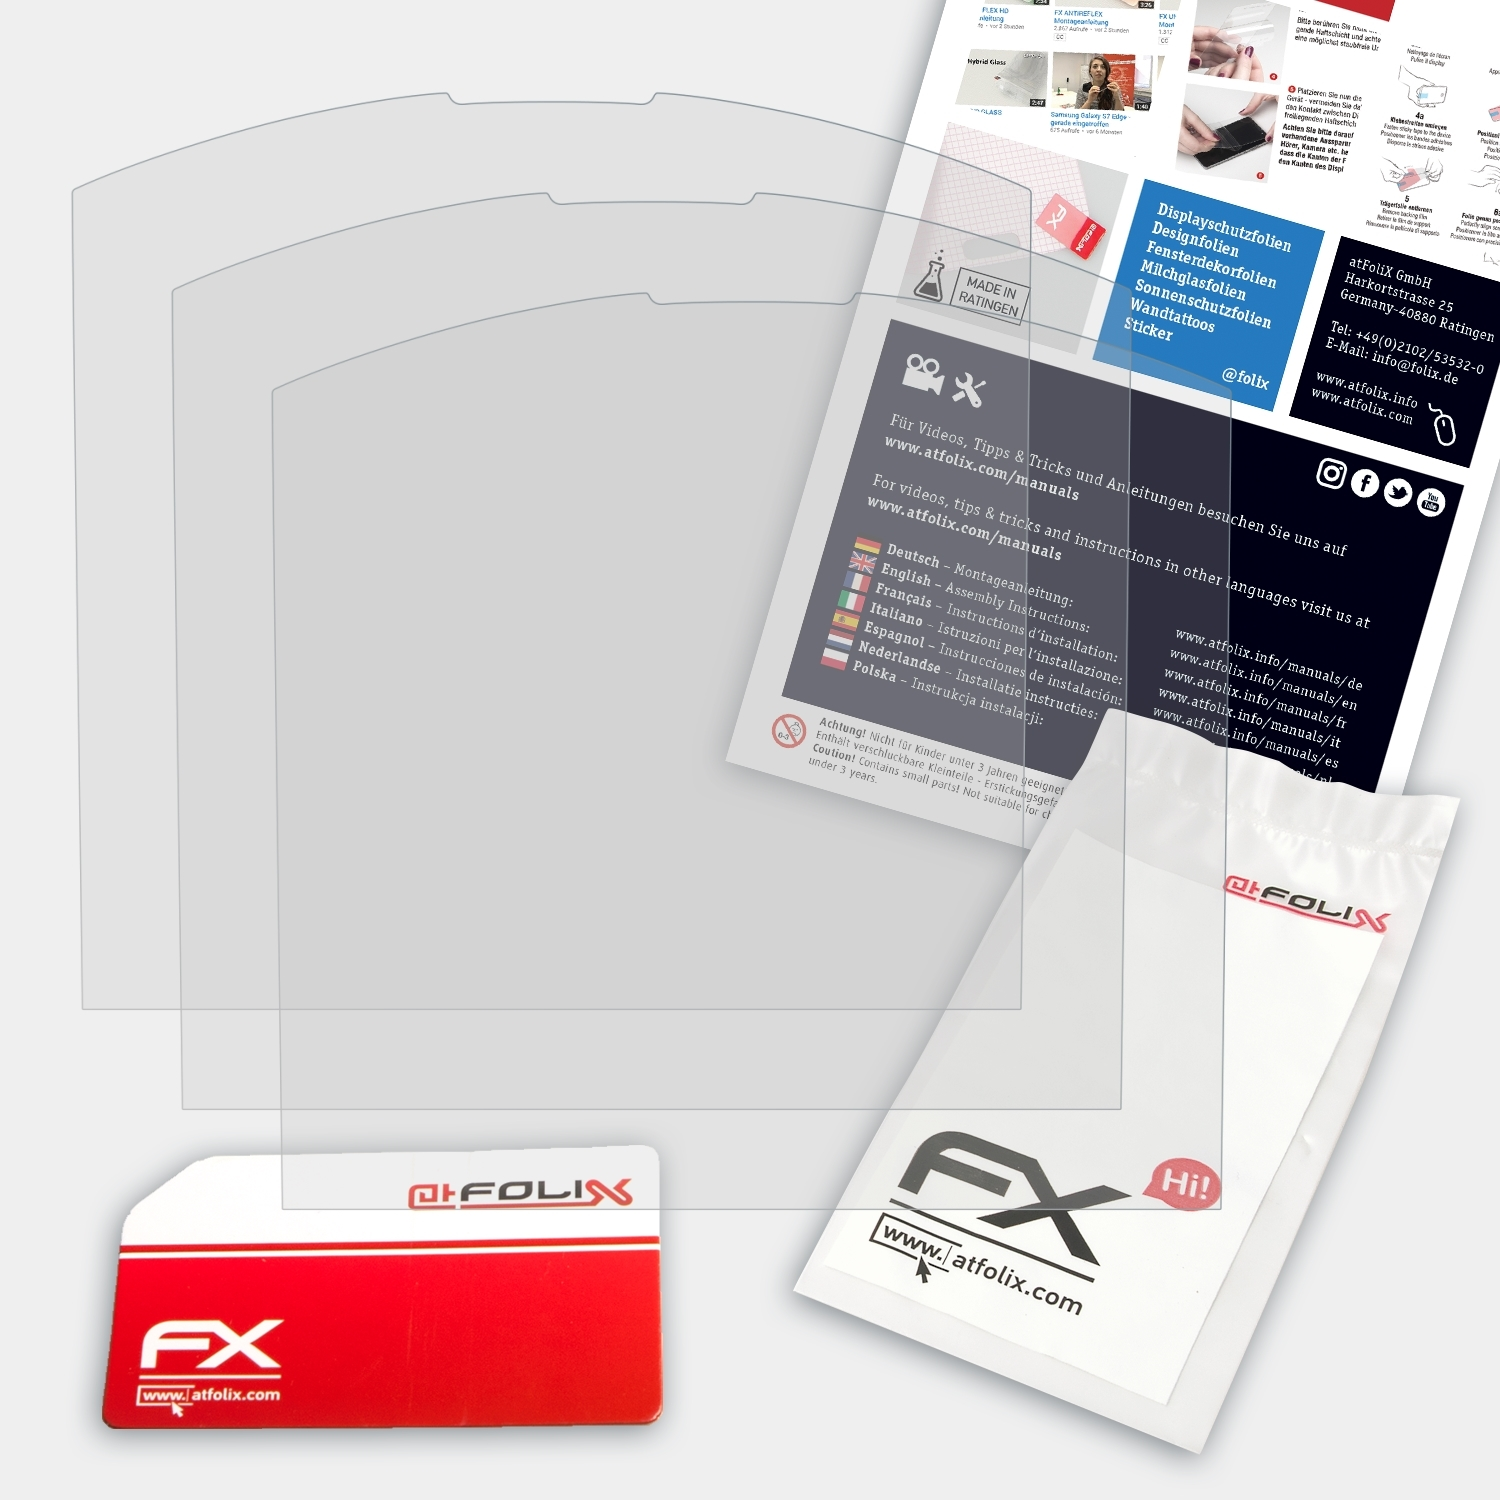 ATFOLIX 3x FX-Antireflex Simplicity) Displayschutz(für Emporia